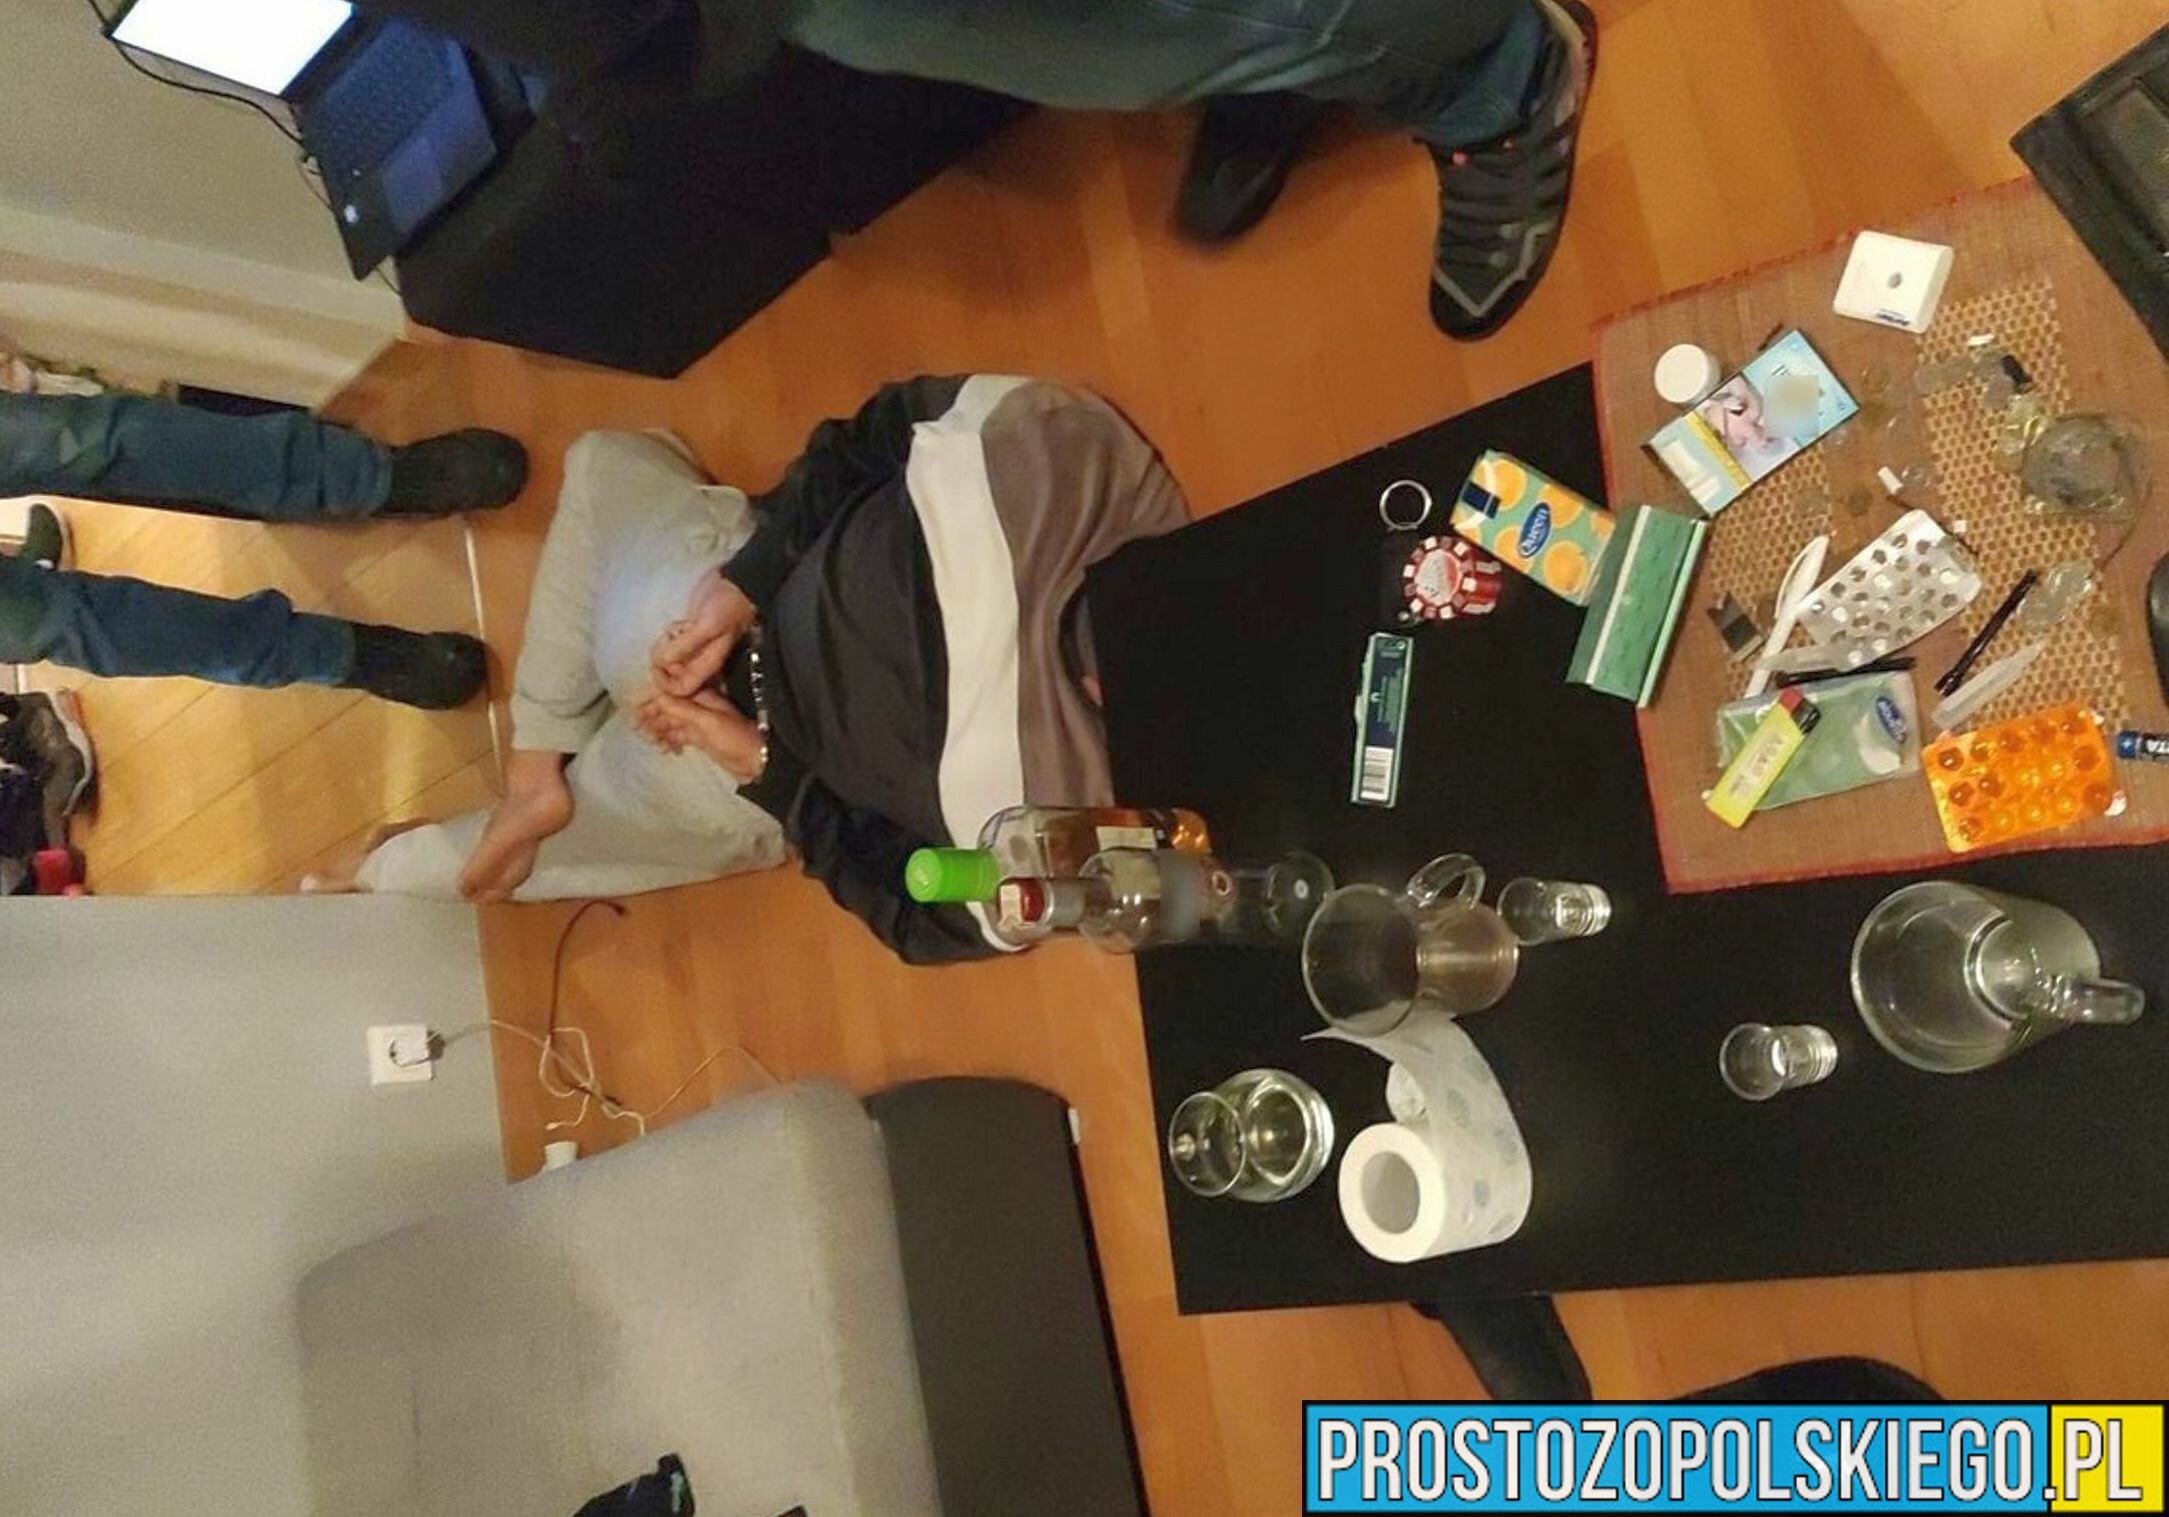 Policjanci z Katowic zajmujący się zwalczaniem przestępczości pseudokibiców zatrzymali 10 osób, a w Kędzierzynie-Koźlu przejęli 25 kilogramów narkotyków.